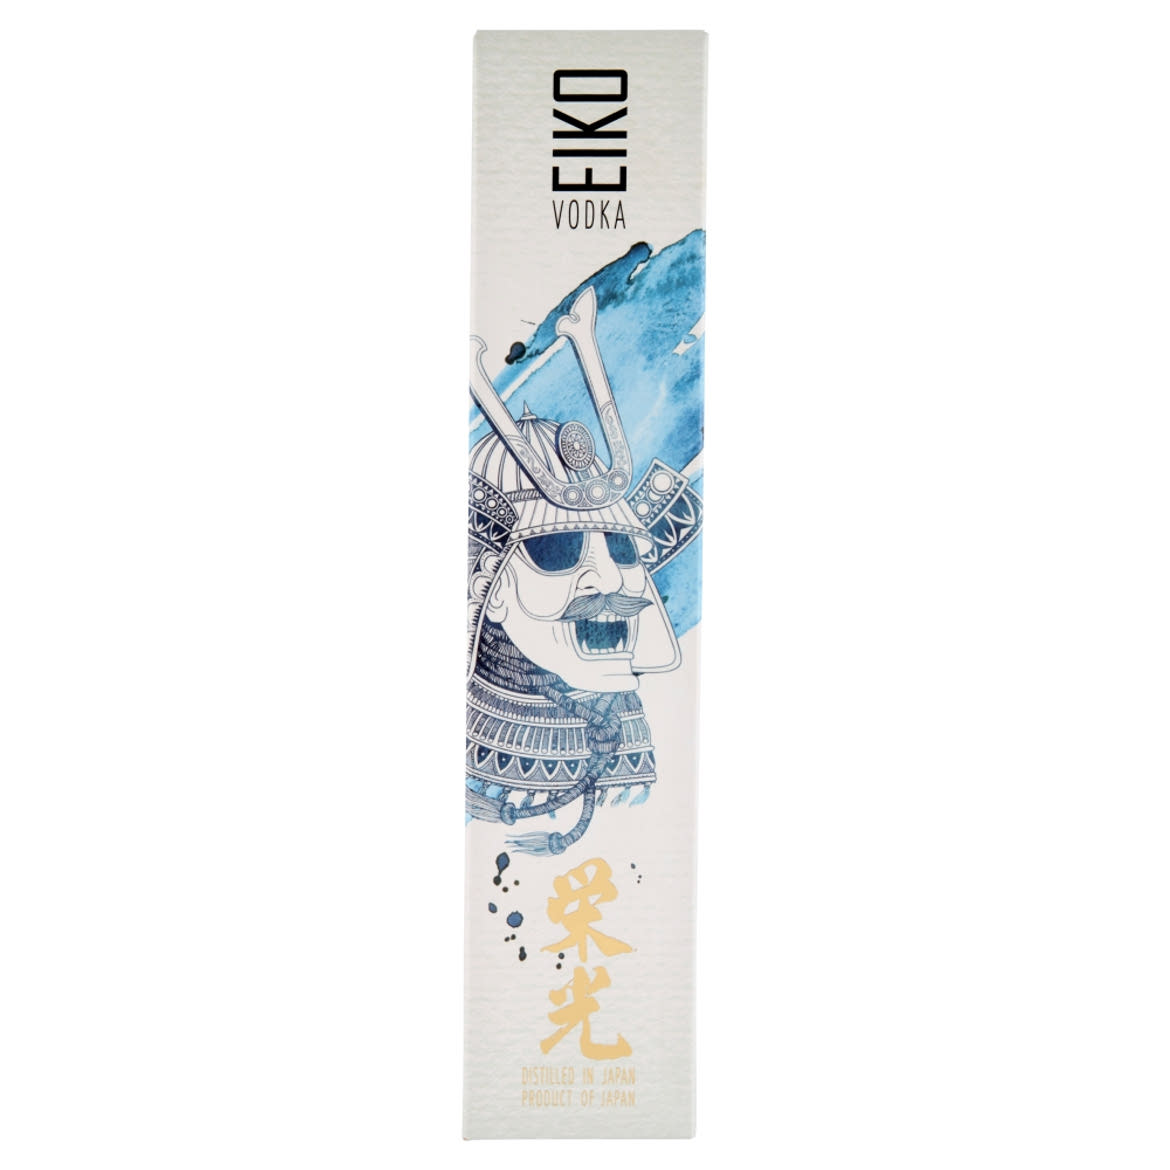 Eiko japán vodka 40%